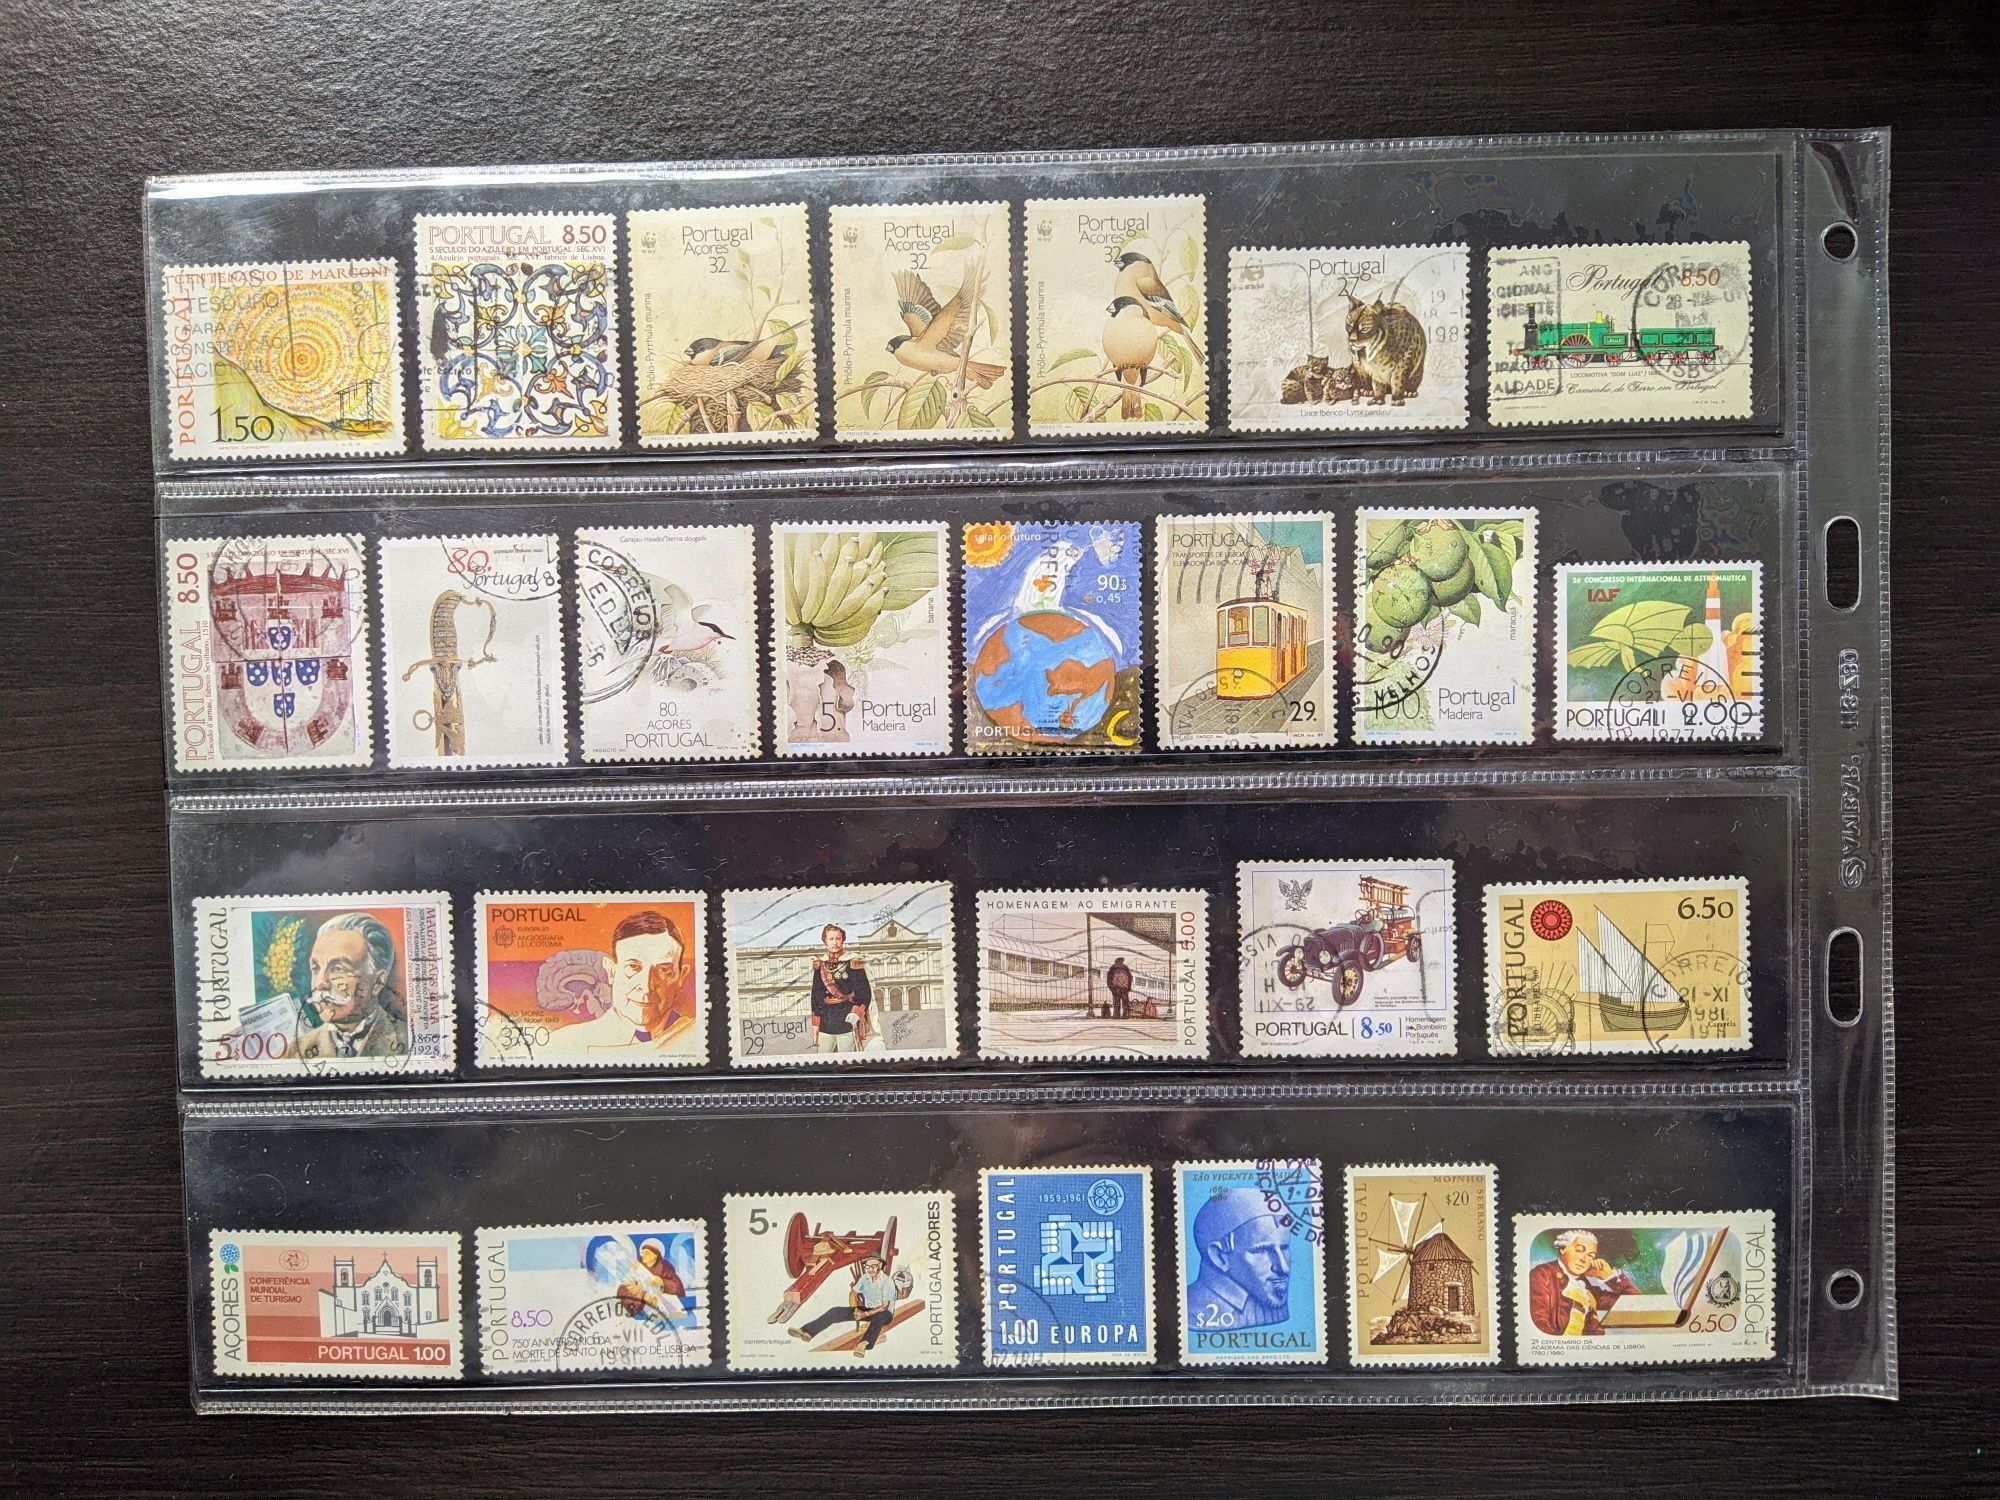 Coleção com mais de 300 selos de Portugal